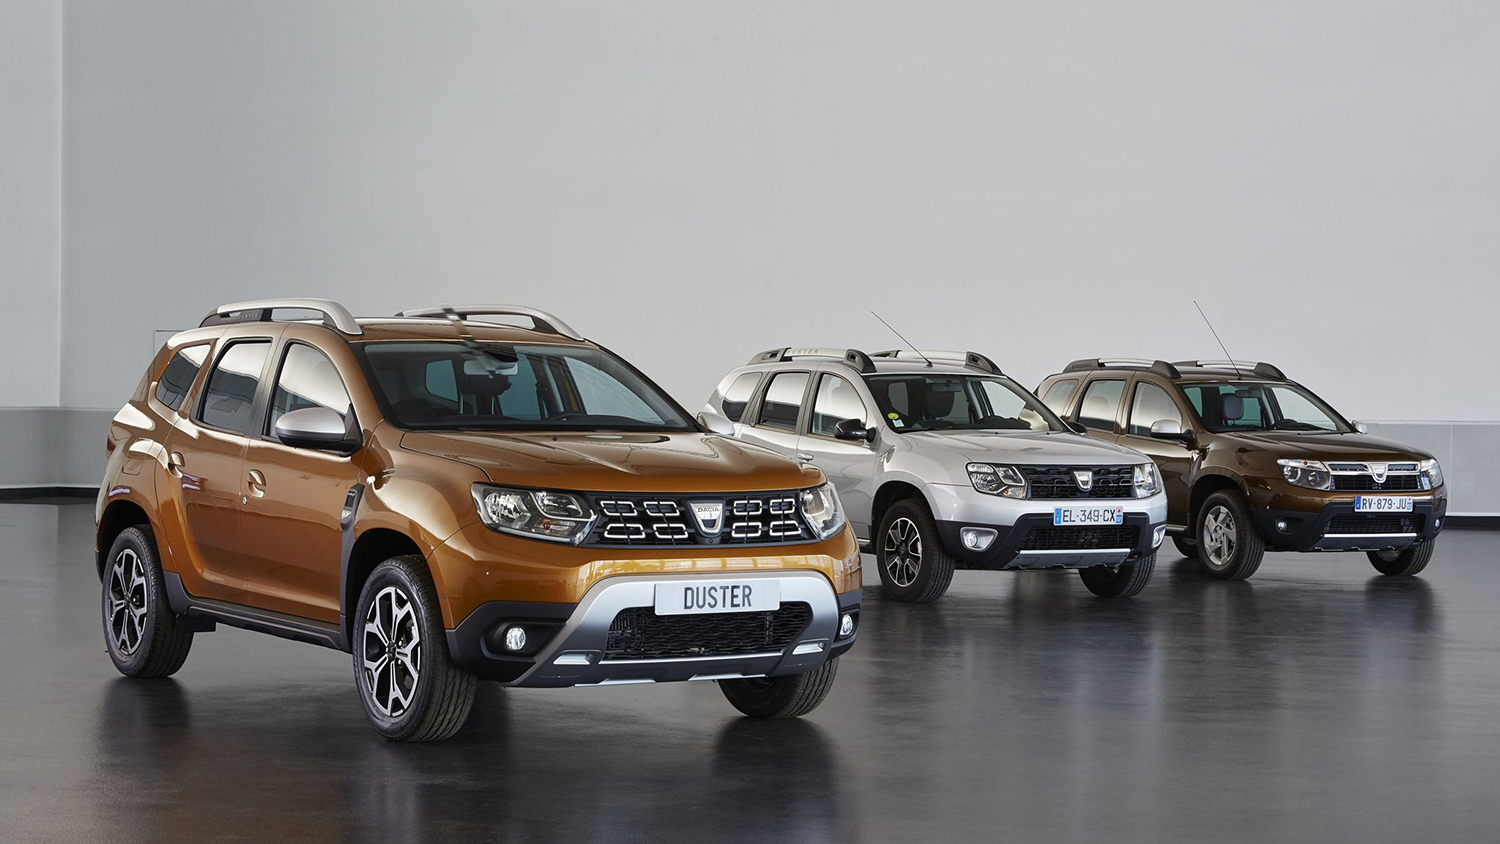 Achat d'une Dacia neuve : jusqu'à -13% de remise